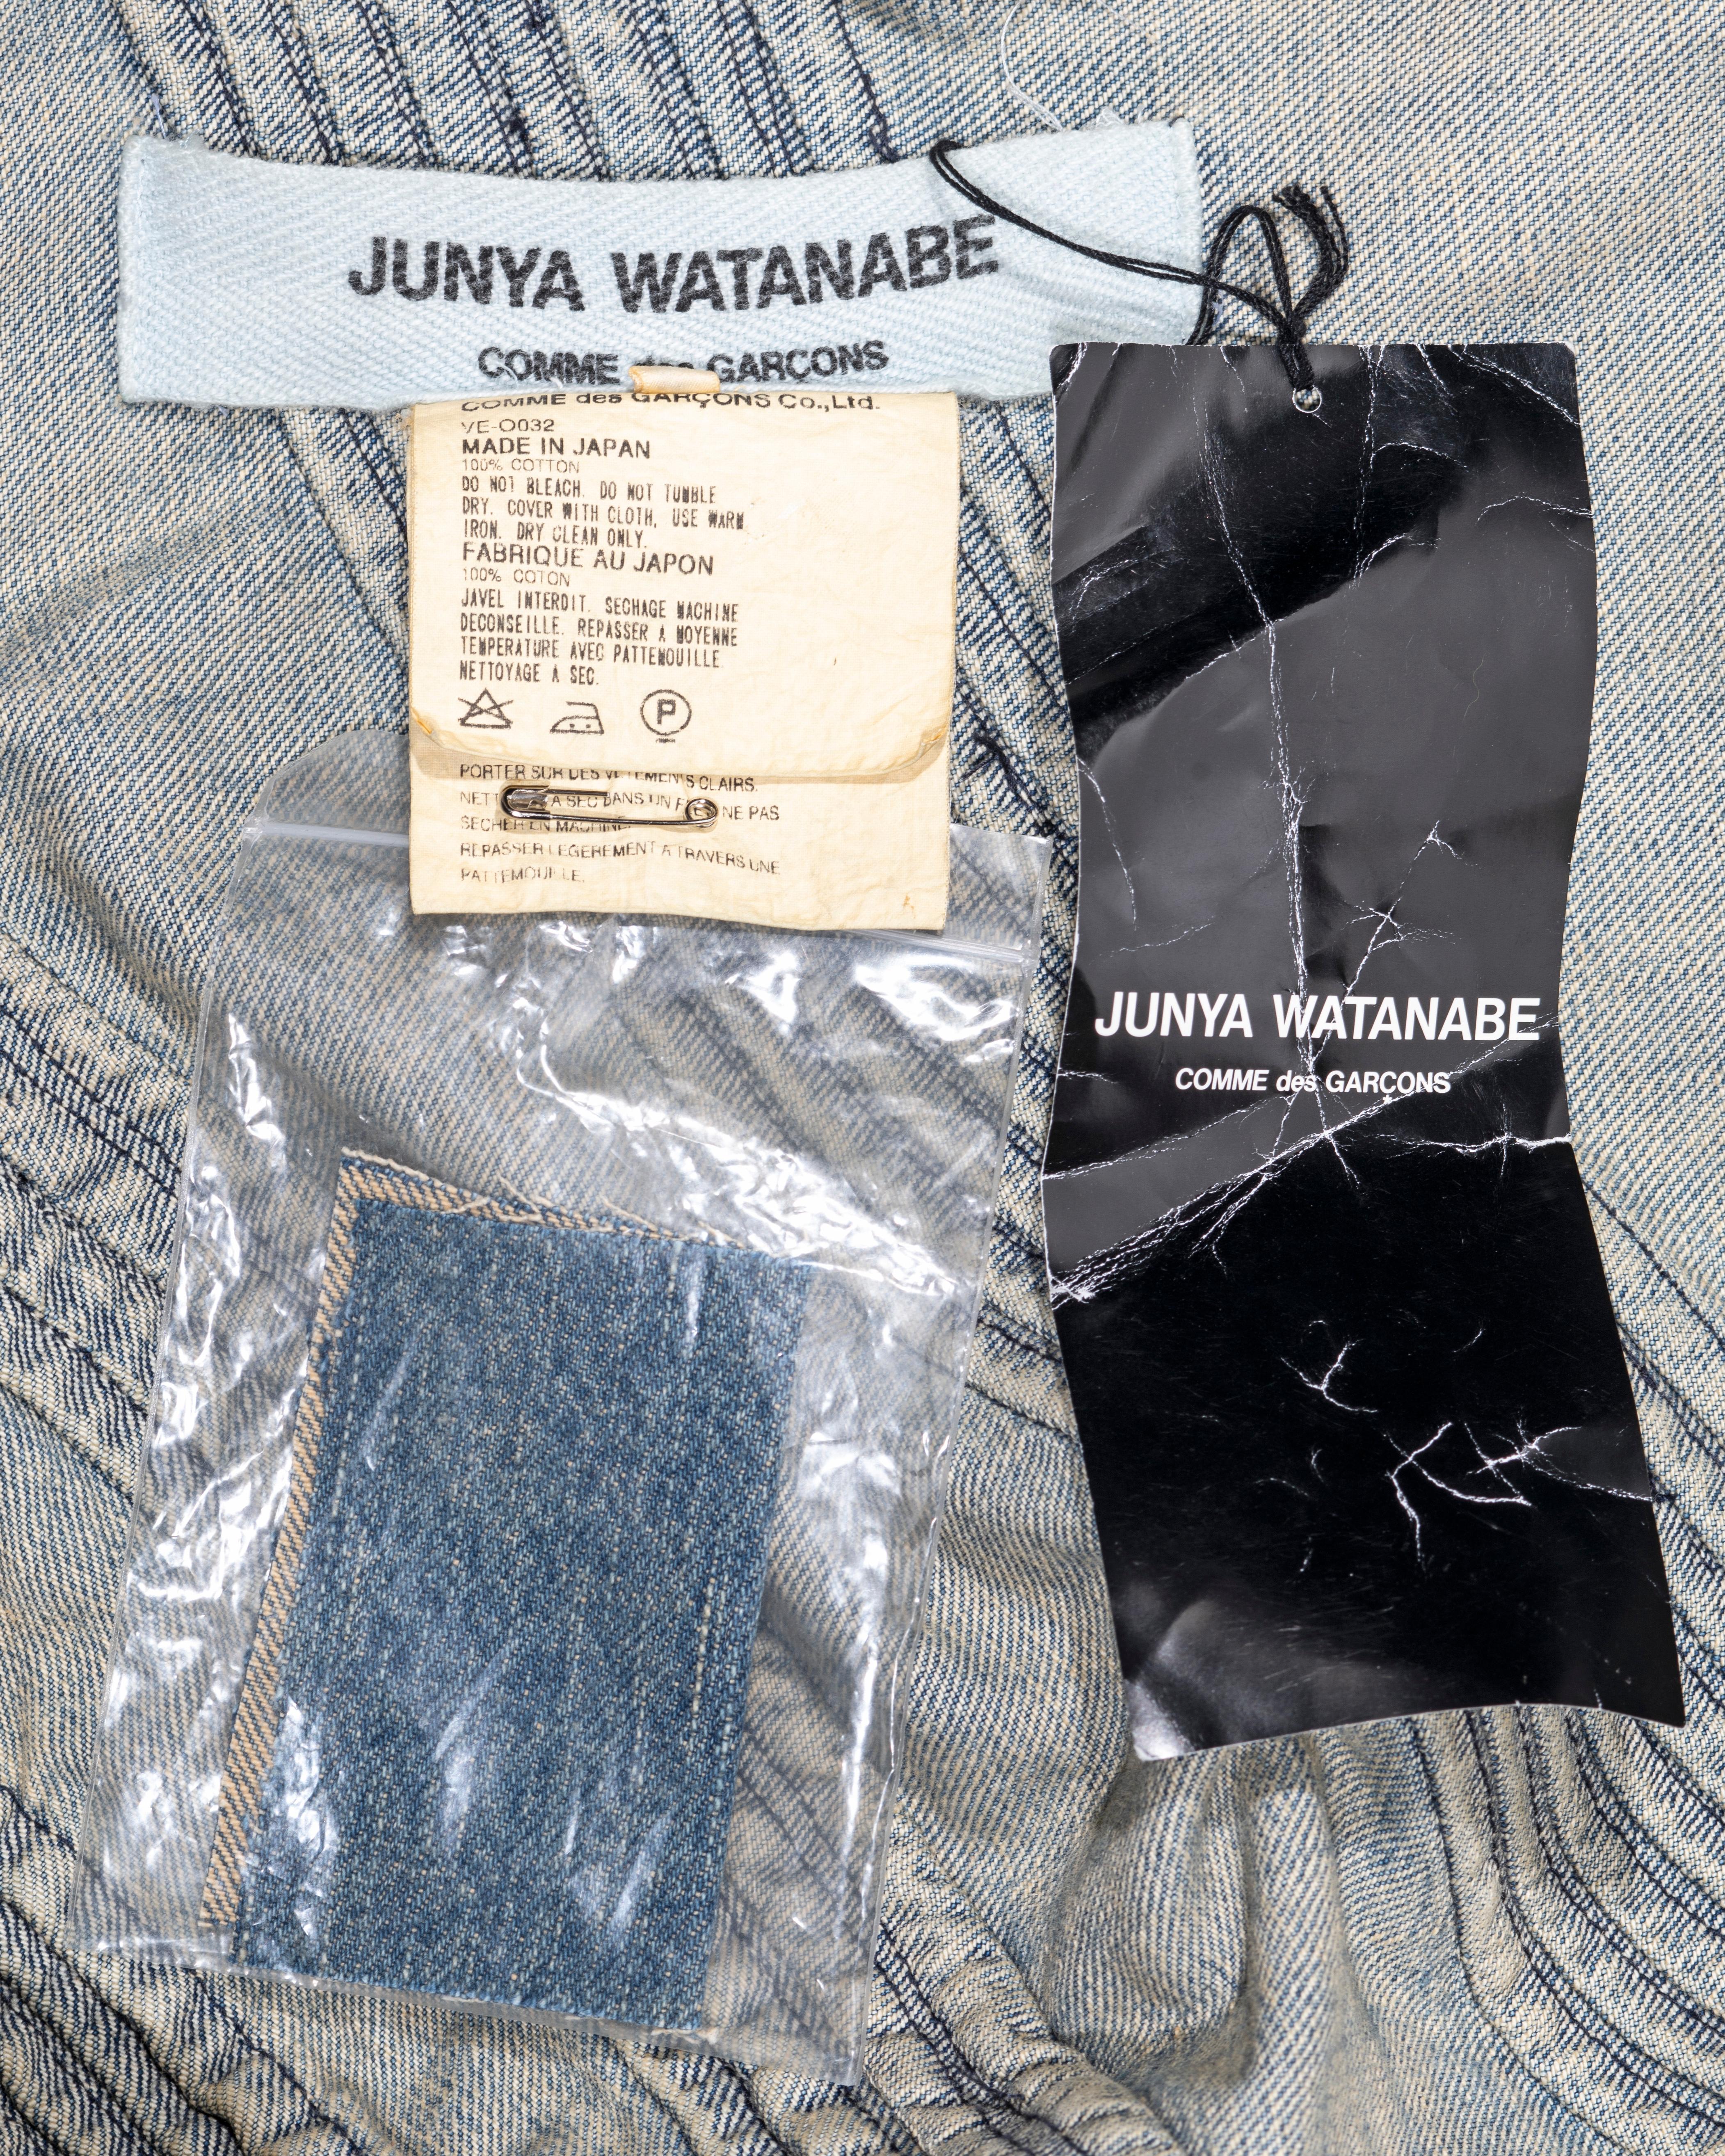 Junya Watanabe washed denim dress and pants ensemble, ss 2002 6